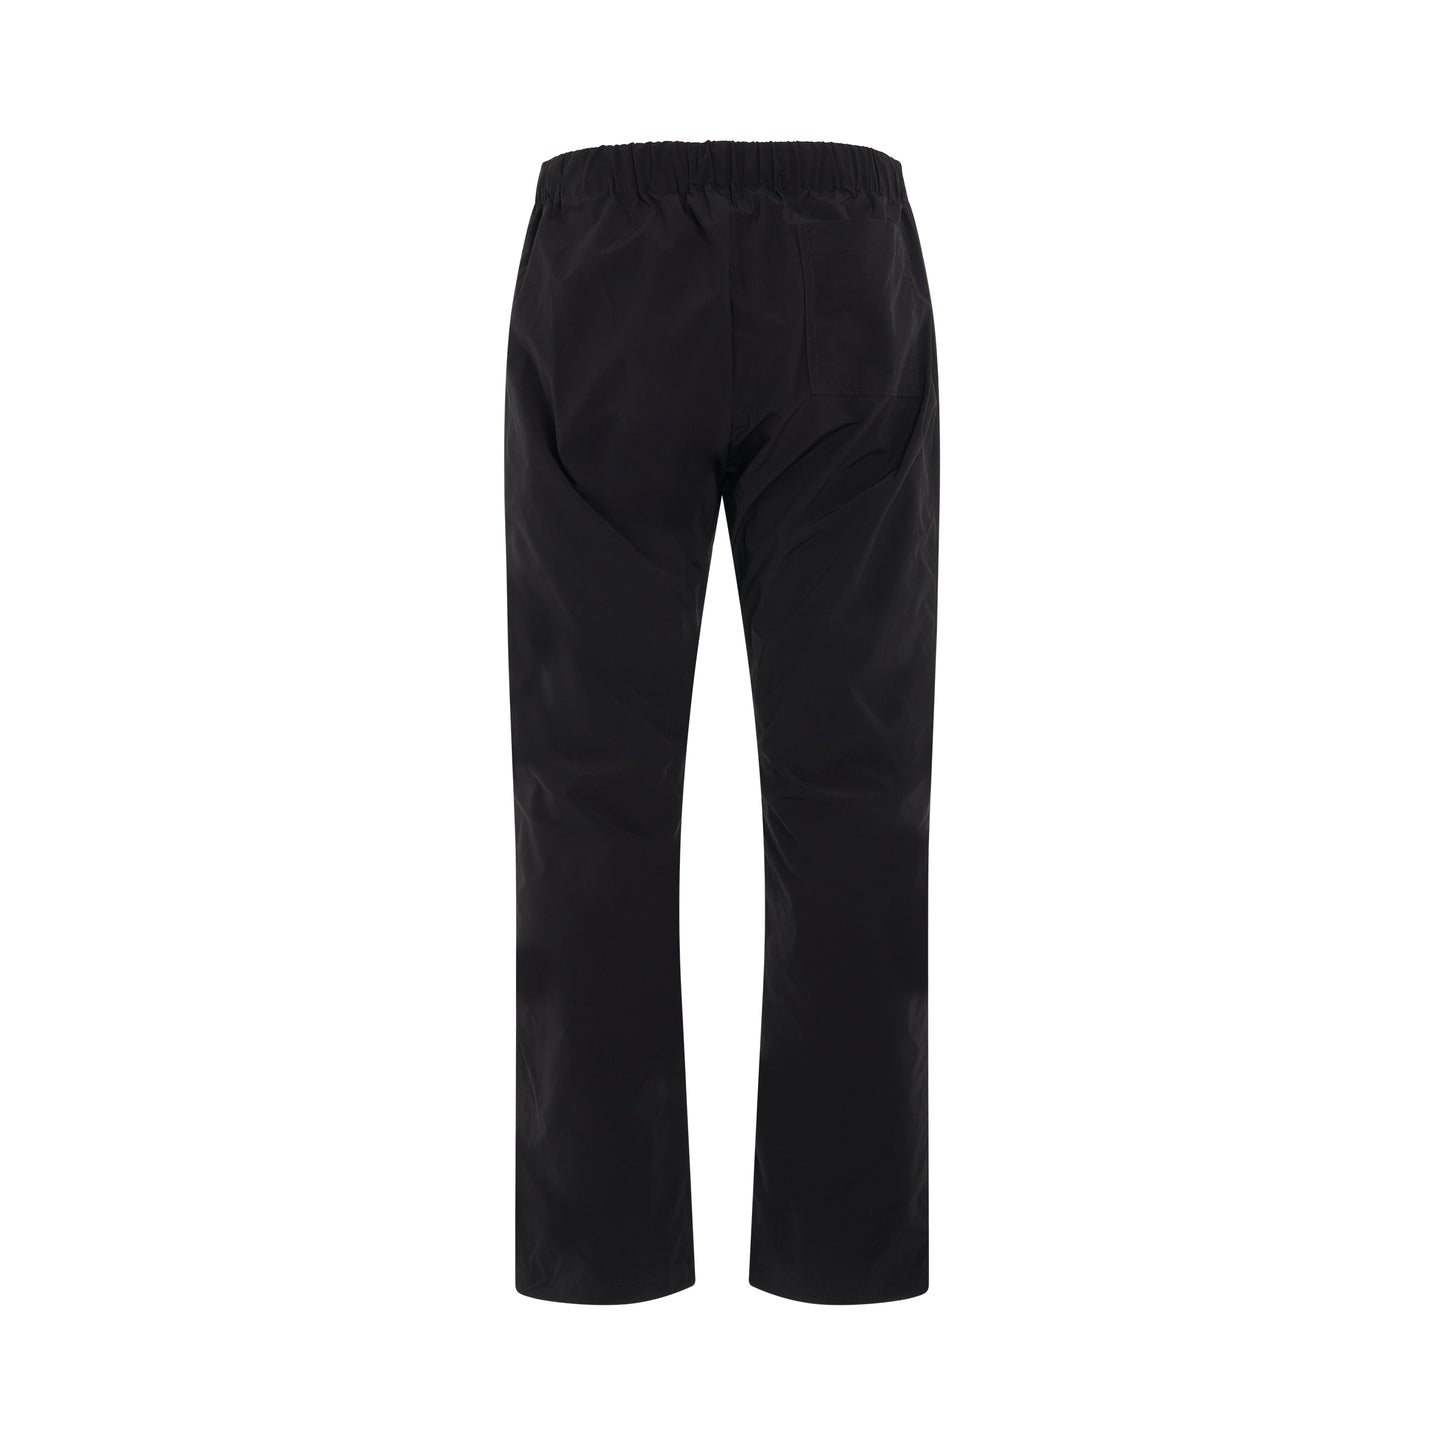 Industrial Casual Pants in Black/Dark Grey